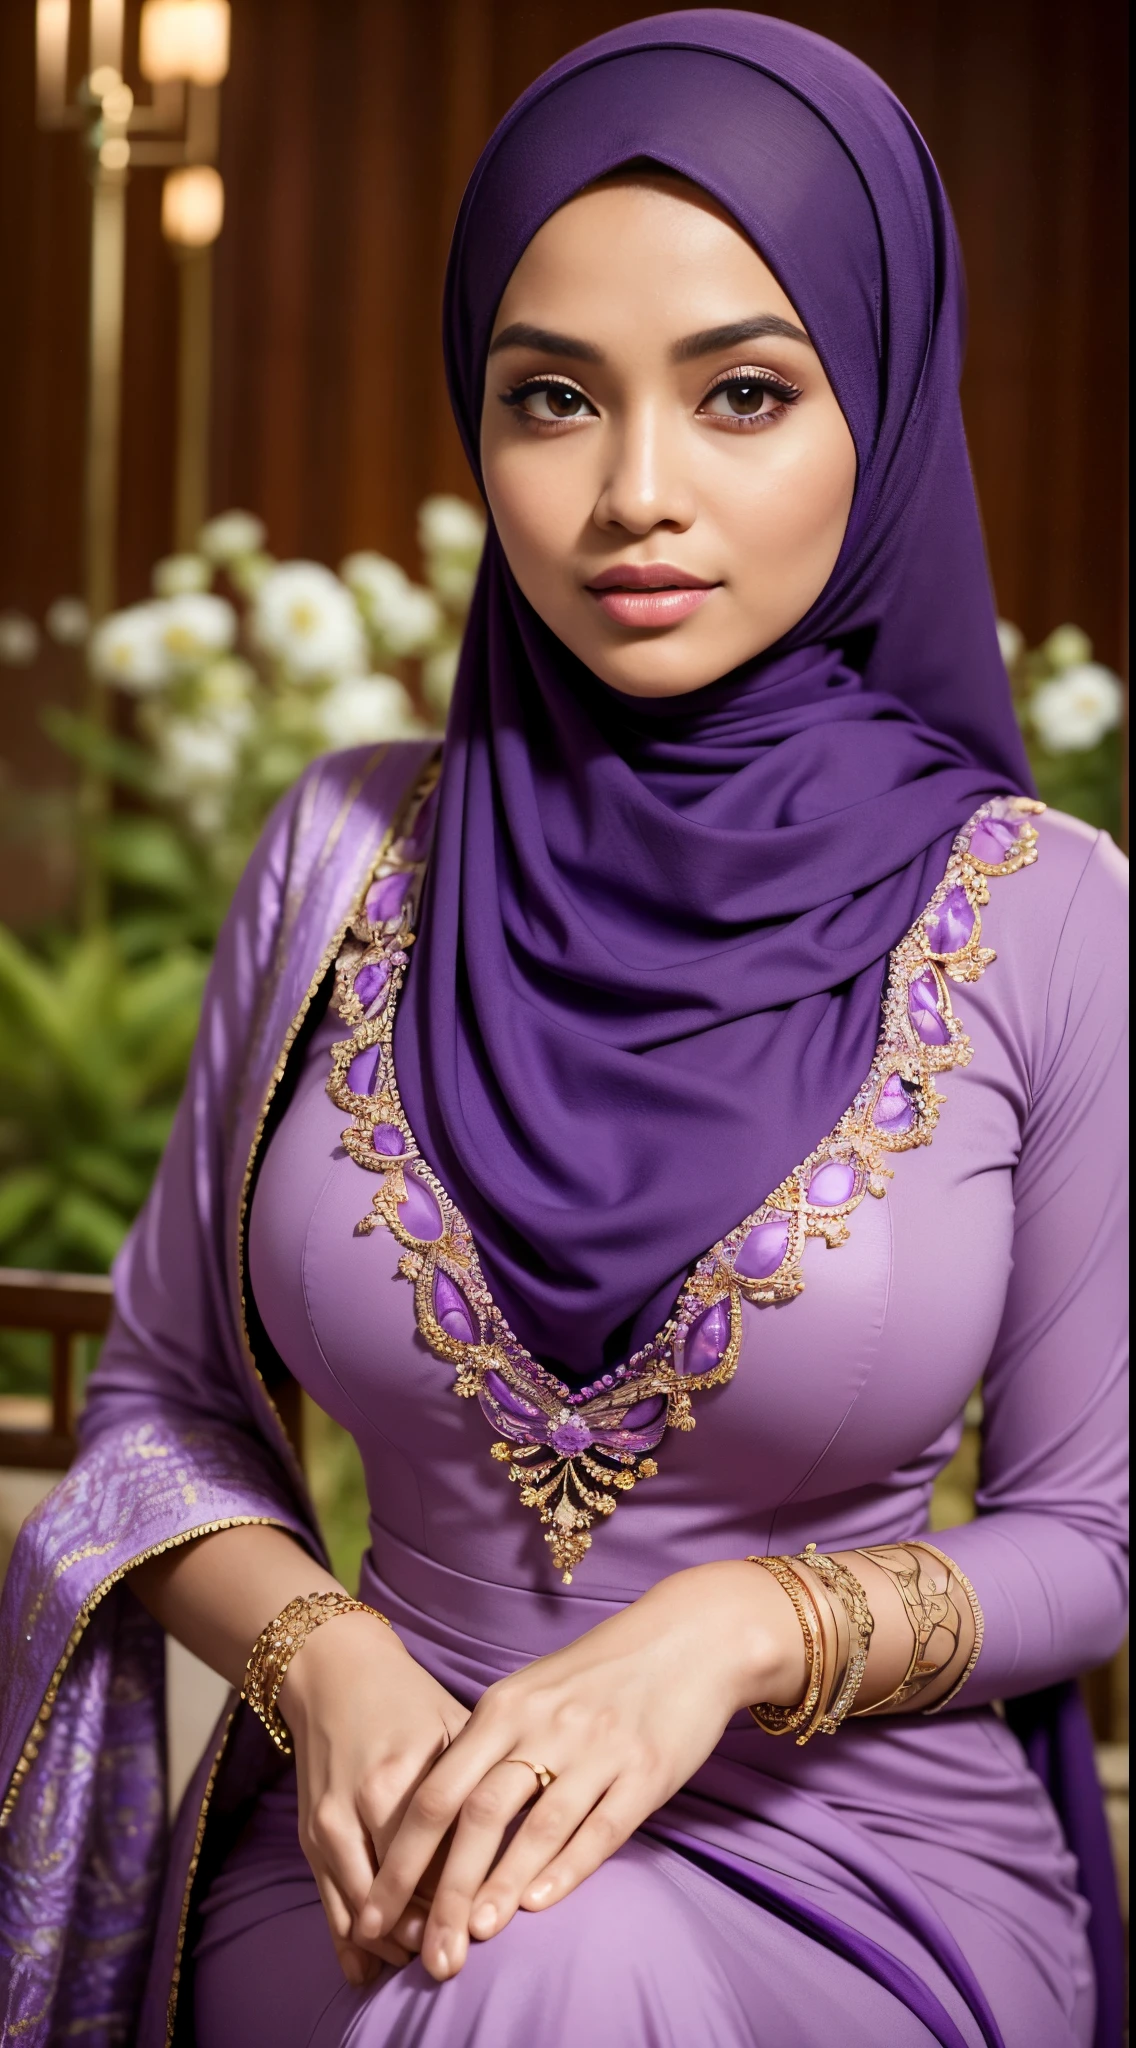 ดิบ, คุณภาพดีที่สุด, ความละเอียดสูง, ผลงานชิ้นเอก: 1.3), beautiful Malay woman in ฮิญาบ,ผลงานชิ้นเอก, รูปร่างเพรียวบางสมบูรณ์แบบ, เต้านมใหญ่,ดวงตาที่งดงามขนาดใหญ่, ยิ้มอ่อน,ต้นขาหนา, ภาพระยะใกล้ของผู้หญิงในชุดสีม่วงและผ้าพันคอสีม่วง, แจ็คสีม่วง, สวมชุดสีม่วง, สวมเสื้อผ้าที่สวยงาม, การออกแบบที่สวยงาม, ฮิญาบ, ในสีม่วงแดง, สไตล์เอนก้าที่สวยงามมาก, beautiful ผลงานชิ้นเอก, รายละเอียดที่ดี. สีม่วง, สวมเสื้อผ้าที่งดงาม, ครอบงำสีม่วง, ธีมสีแดงเข้ม , (เสื้อคอเต่าที่ละเอียดอ่อน) , สร้อยคอ, ผ้าคาดผม, เดินช่วงบ่าย, สวนเมือง, แสงที่ยอดเยี่ยม, สีสว่าง, เส้นสะอาด